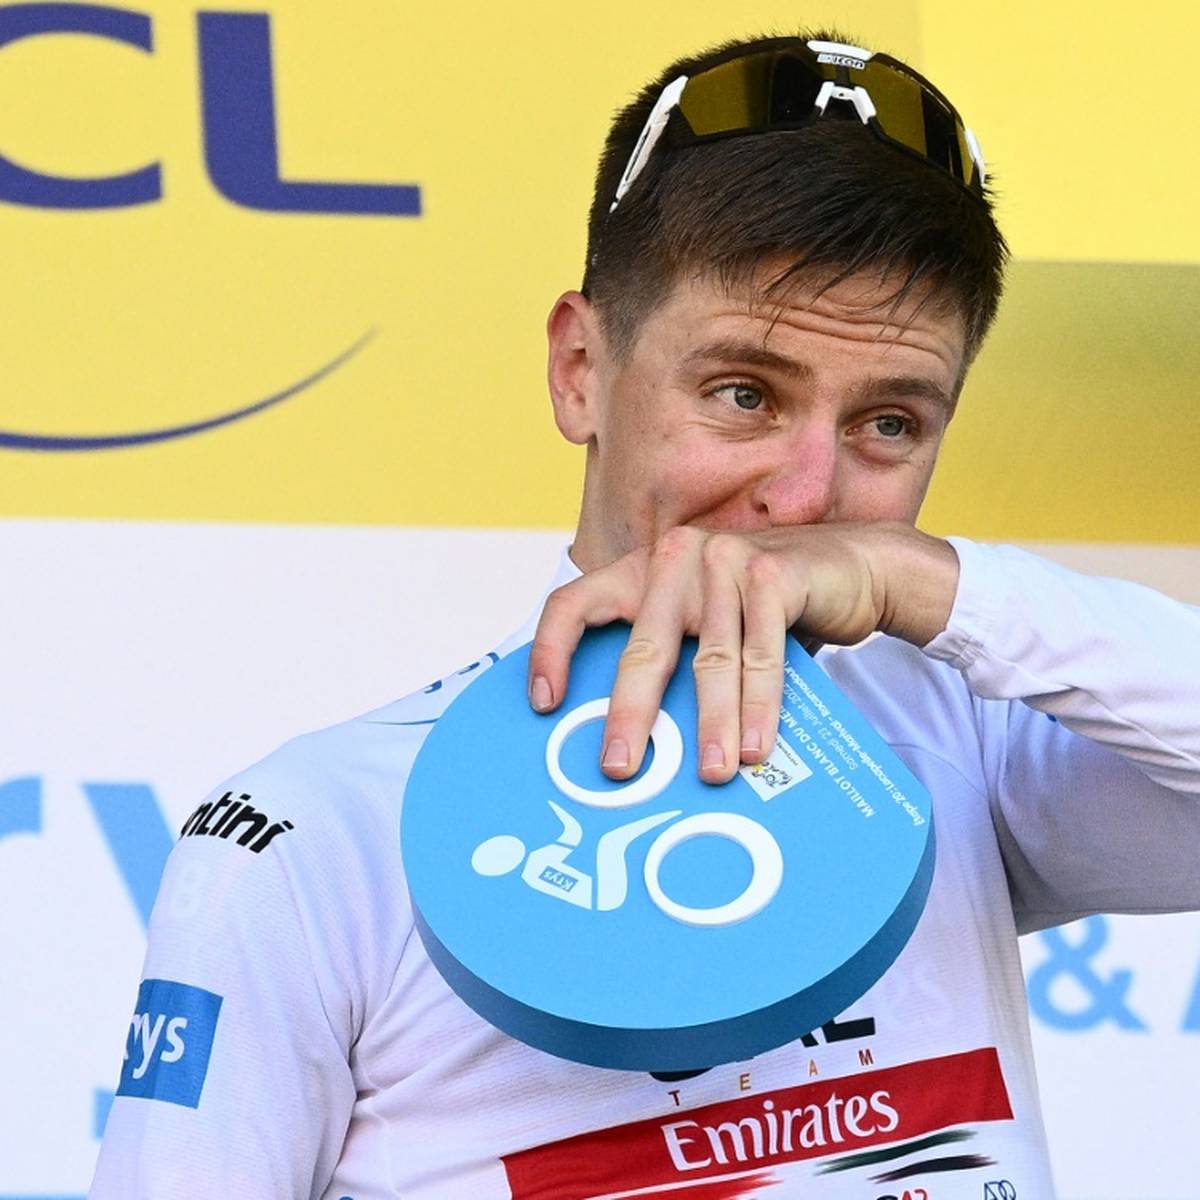 Der zweimalige Tour-de-France-Sieger Tadej Pogacar (Slowenien) lässt in diesem Jahr anders als zunächst geplant die Spanien-Rundfahrt Vuelta aus.